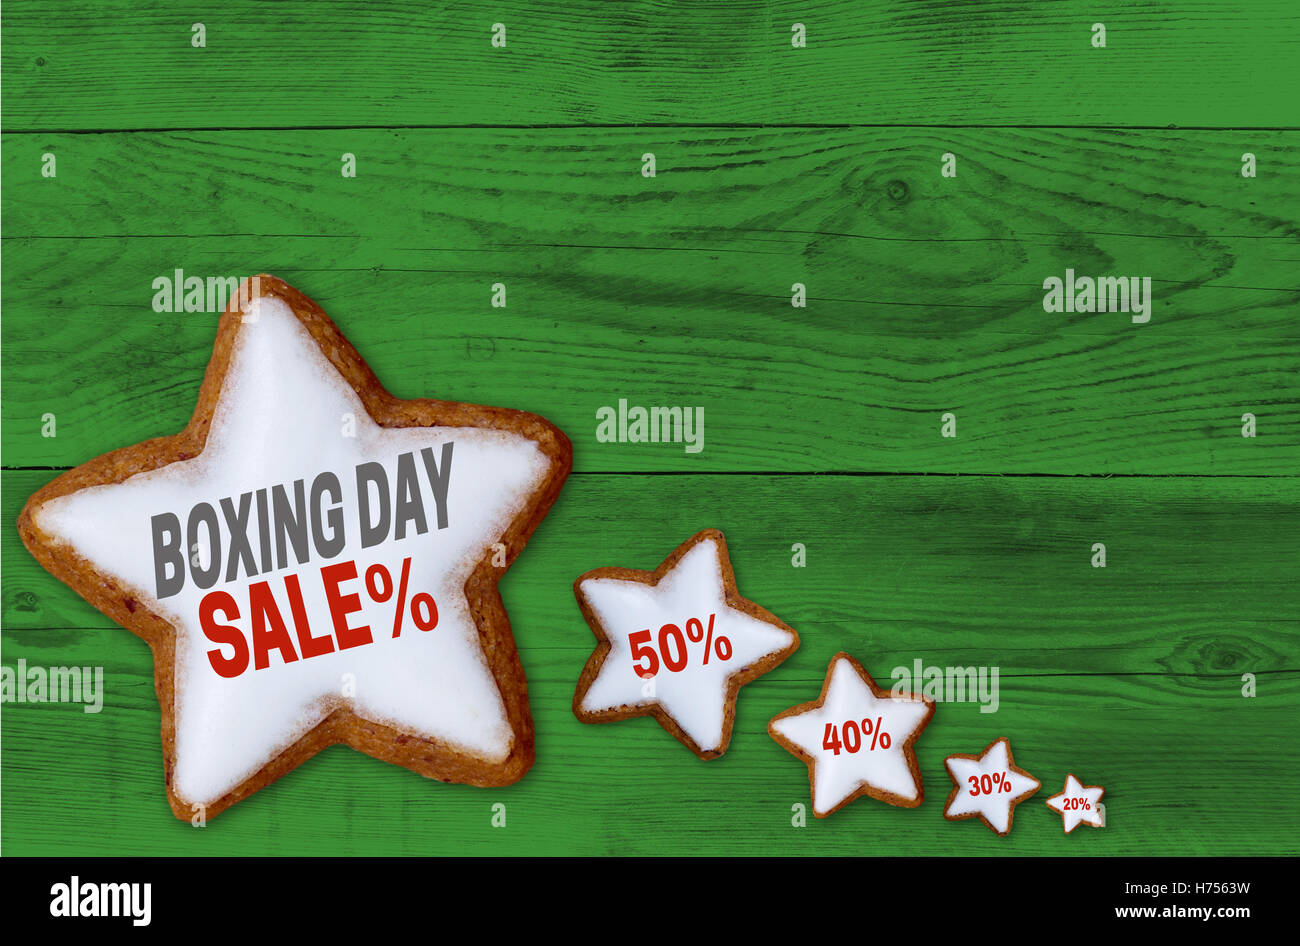 Boxing Day Sale Zimt Stern am grünen Holz Konzept. Stockfoto